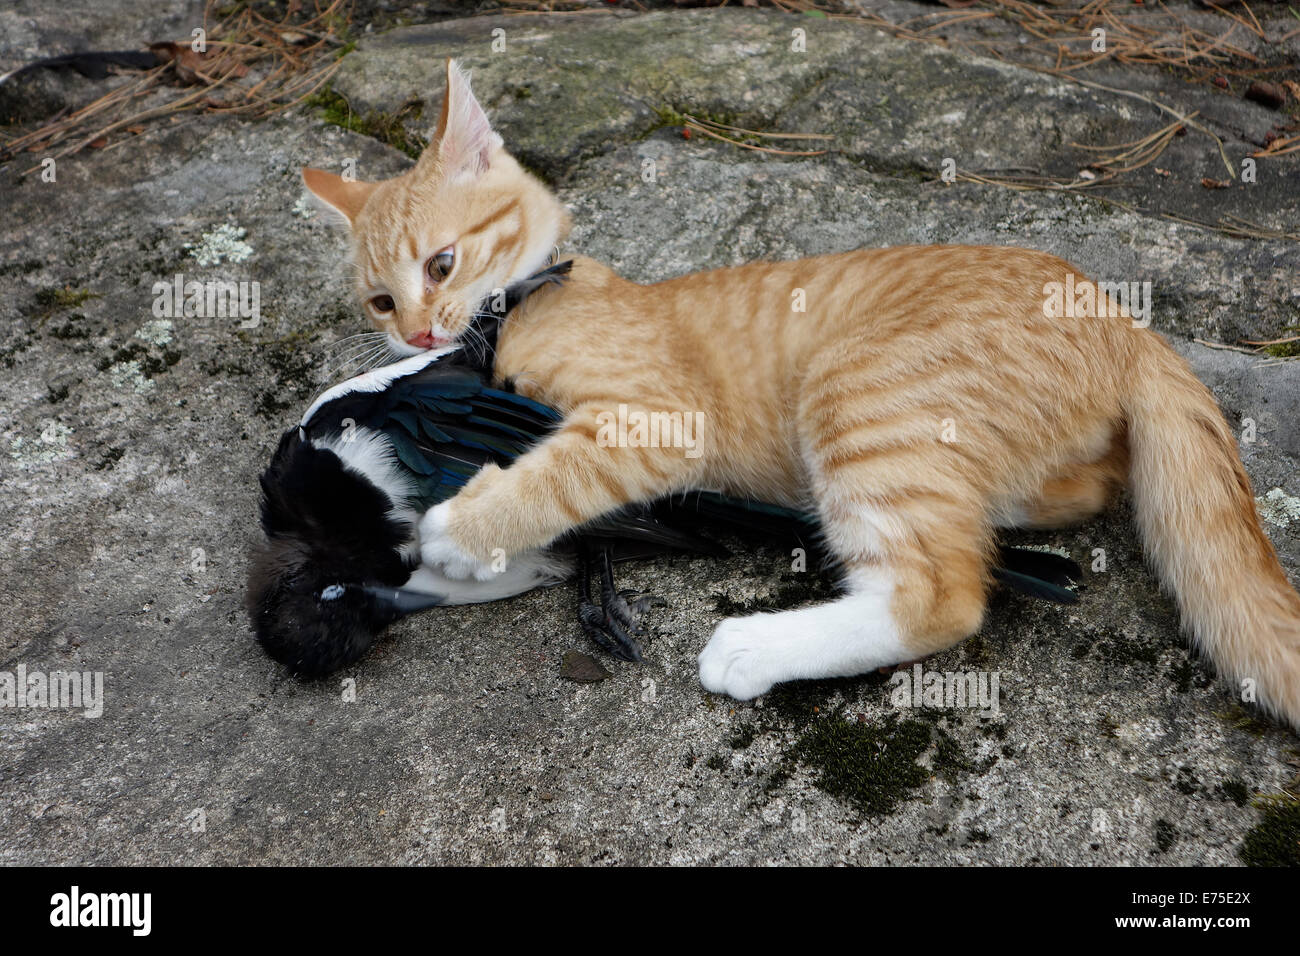 Lindo gatito mascota mordeduras de su orar una urraca de aves muertas. Foto de stock